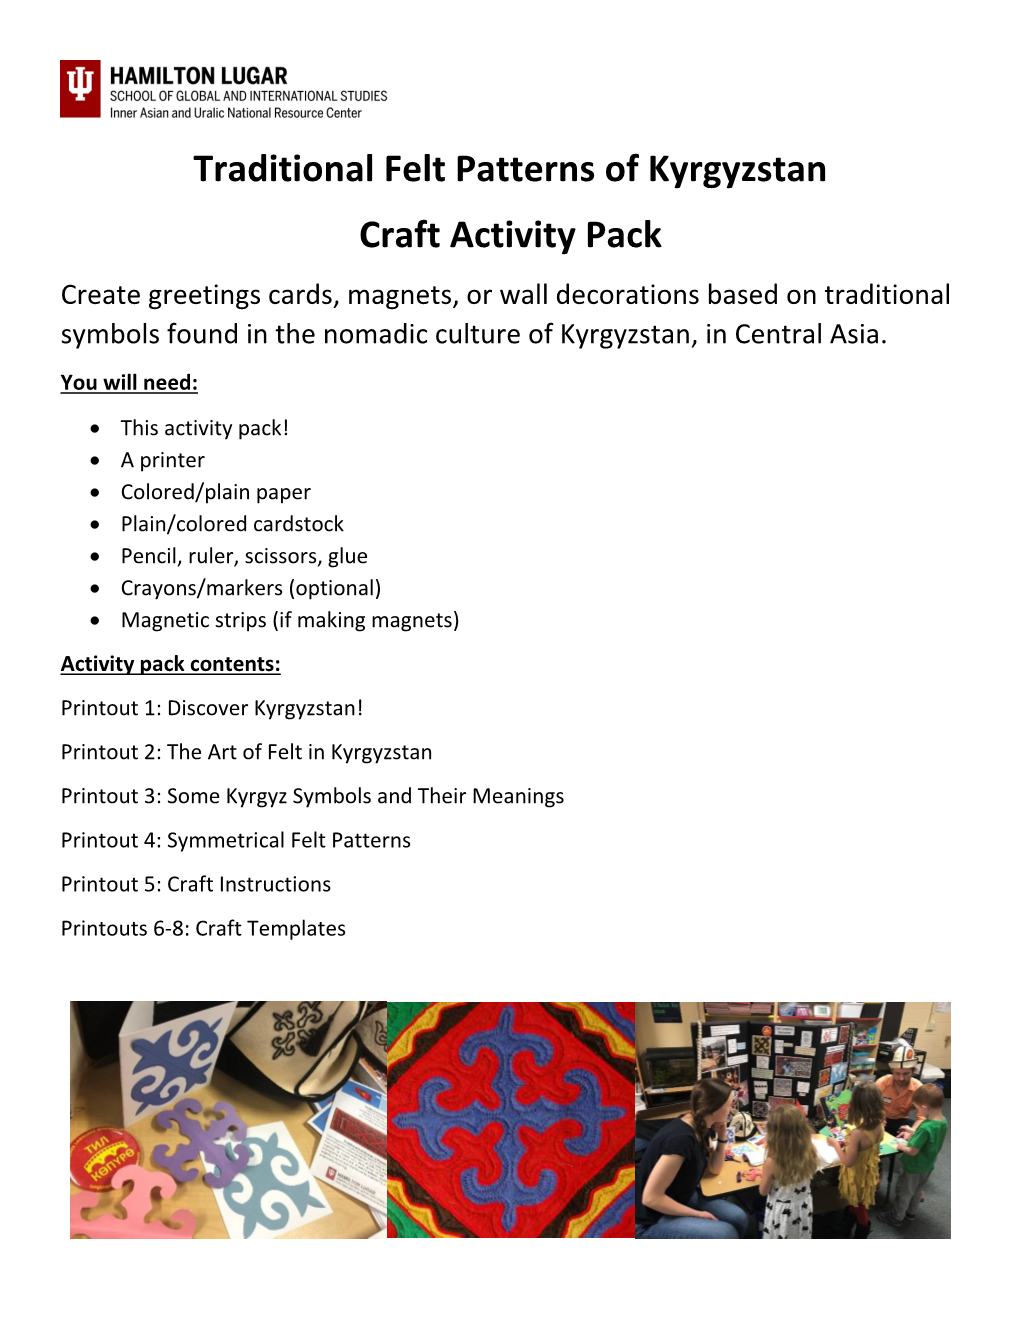 Kyrgyz Felt Patterns